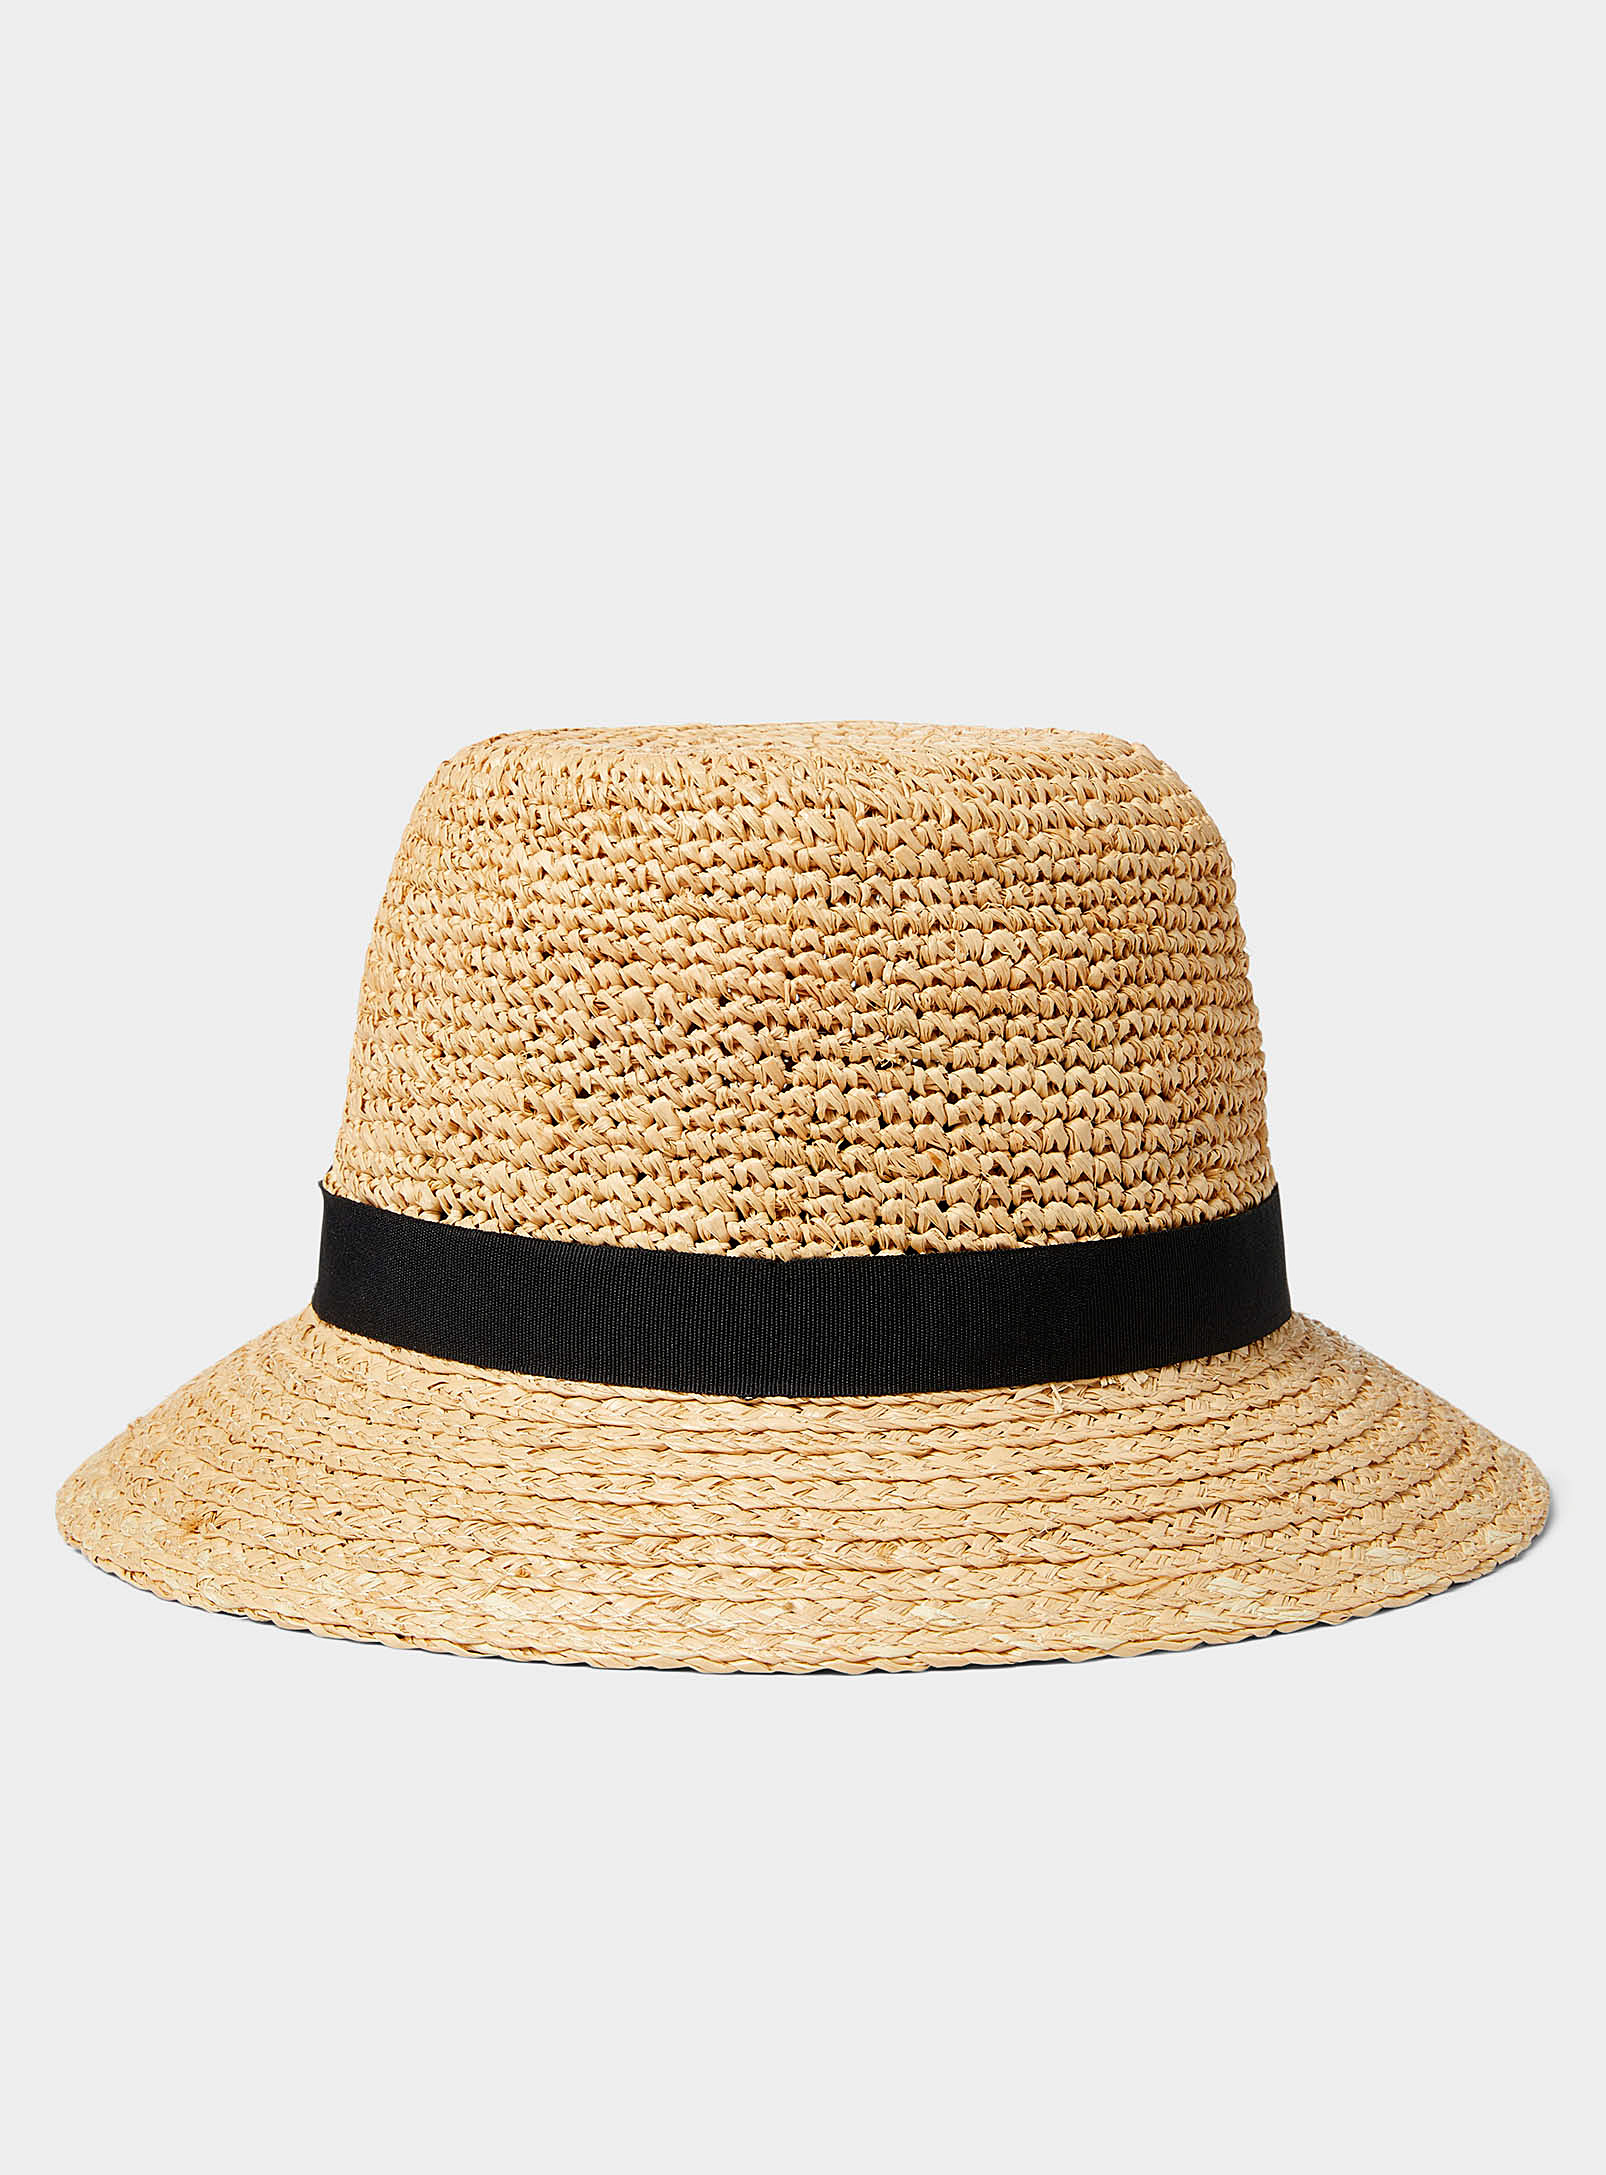 Canadian Hat - Women's Raffia cloche hat